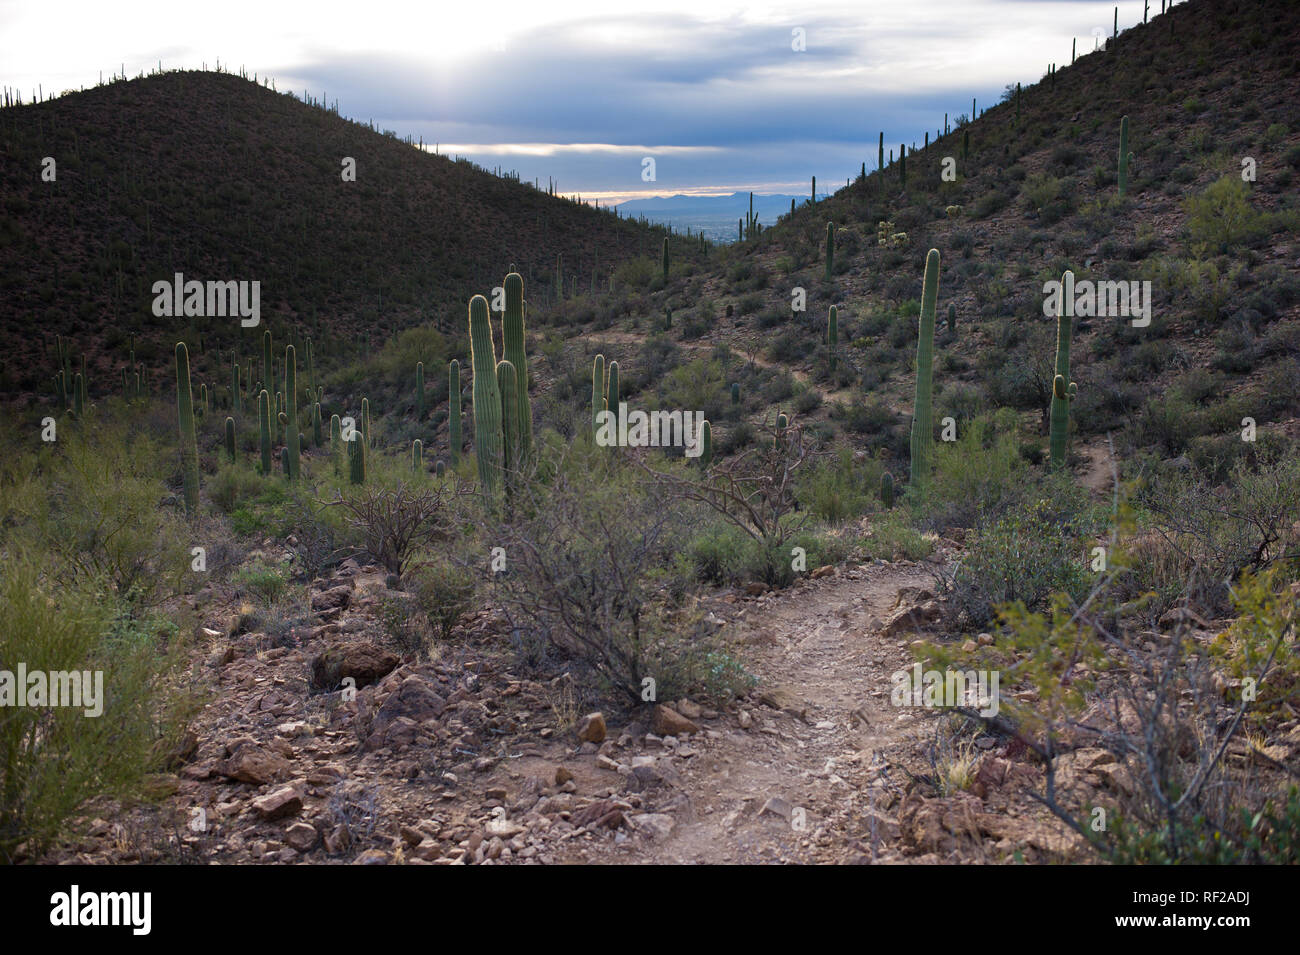 La famosa cactus Saguaro sono abbondanti in questo deserto Sonoran sentiero escursionistico in Tucson in Arizona. Foto Stock